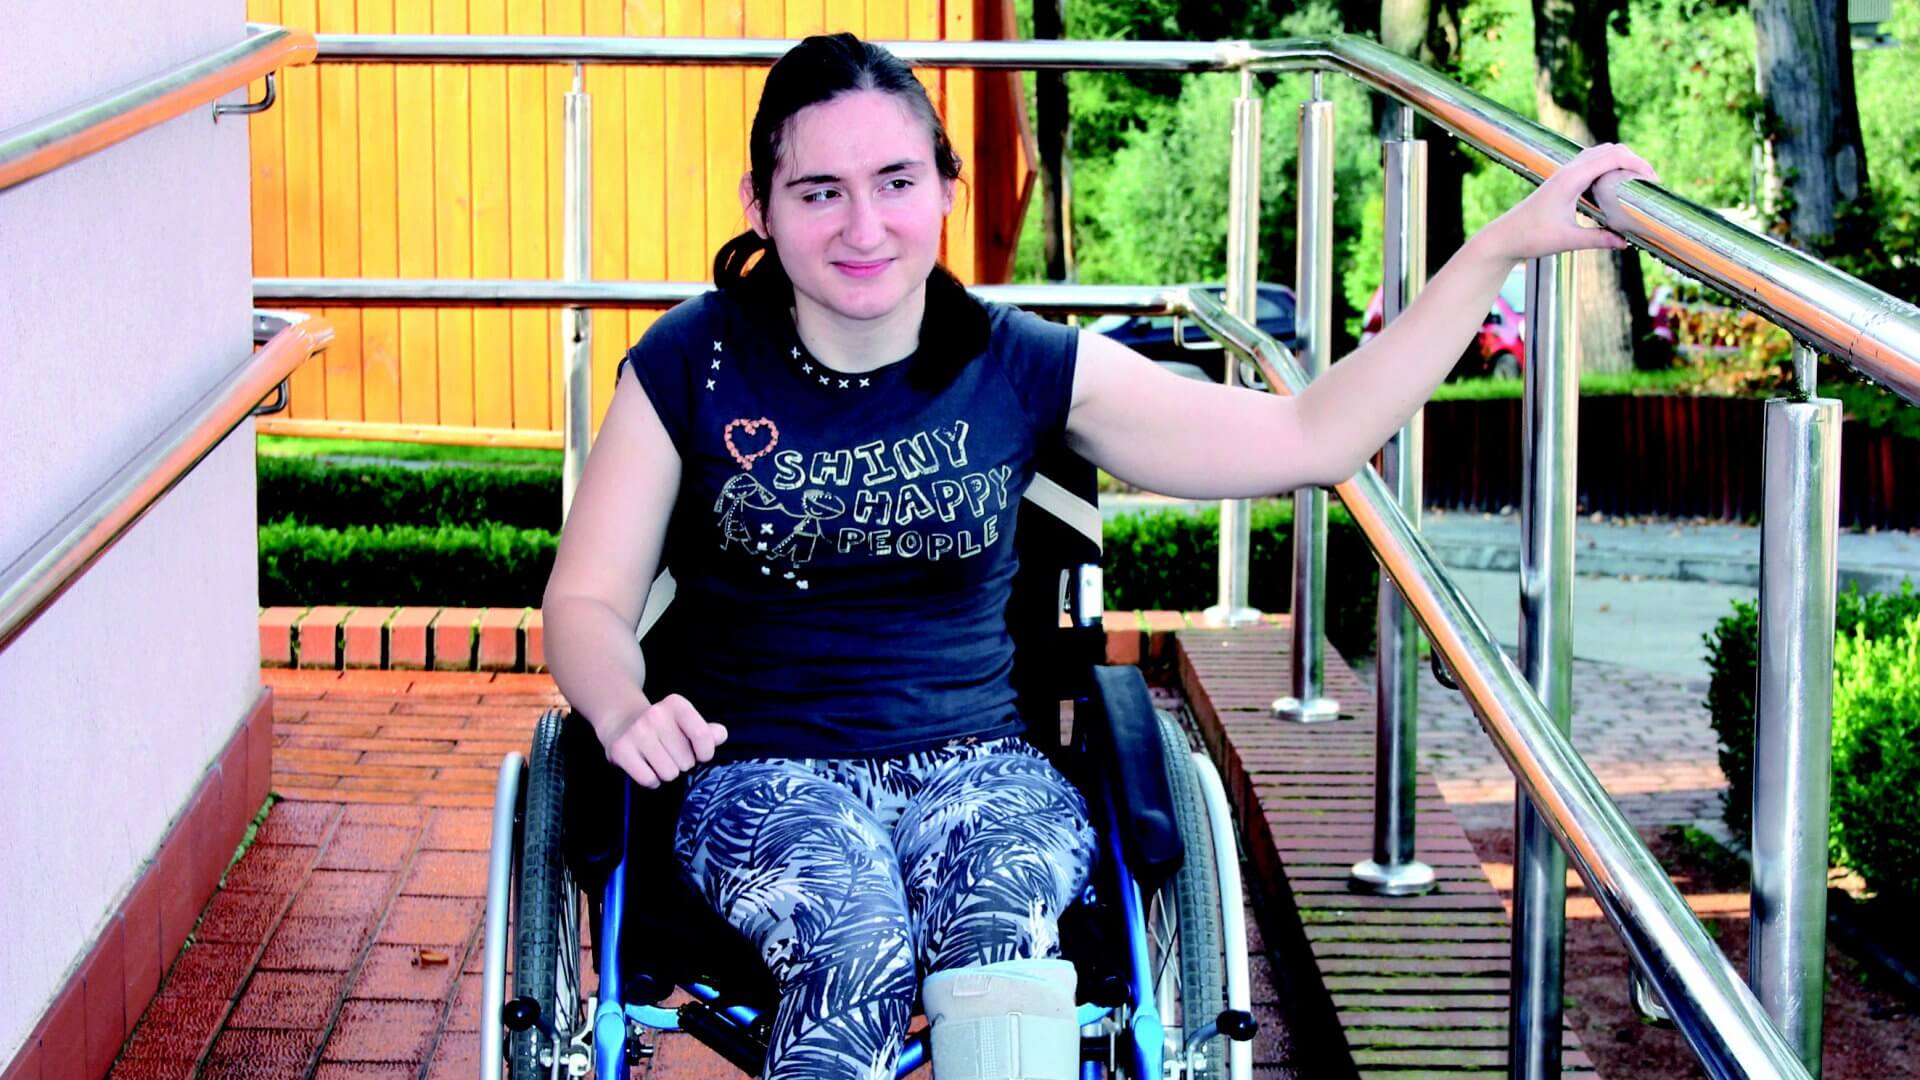 Uczestniczka Warsztatu Terapii Zajęciowej zjeżdża z rampy na wózku inwalidzkim